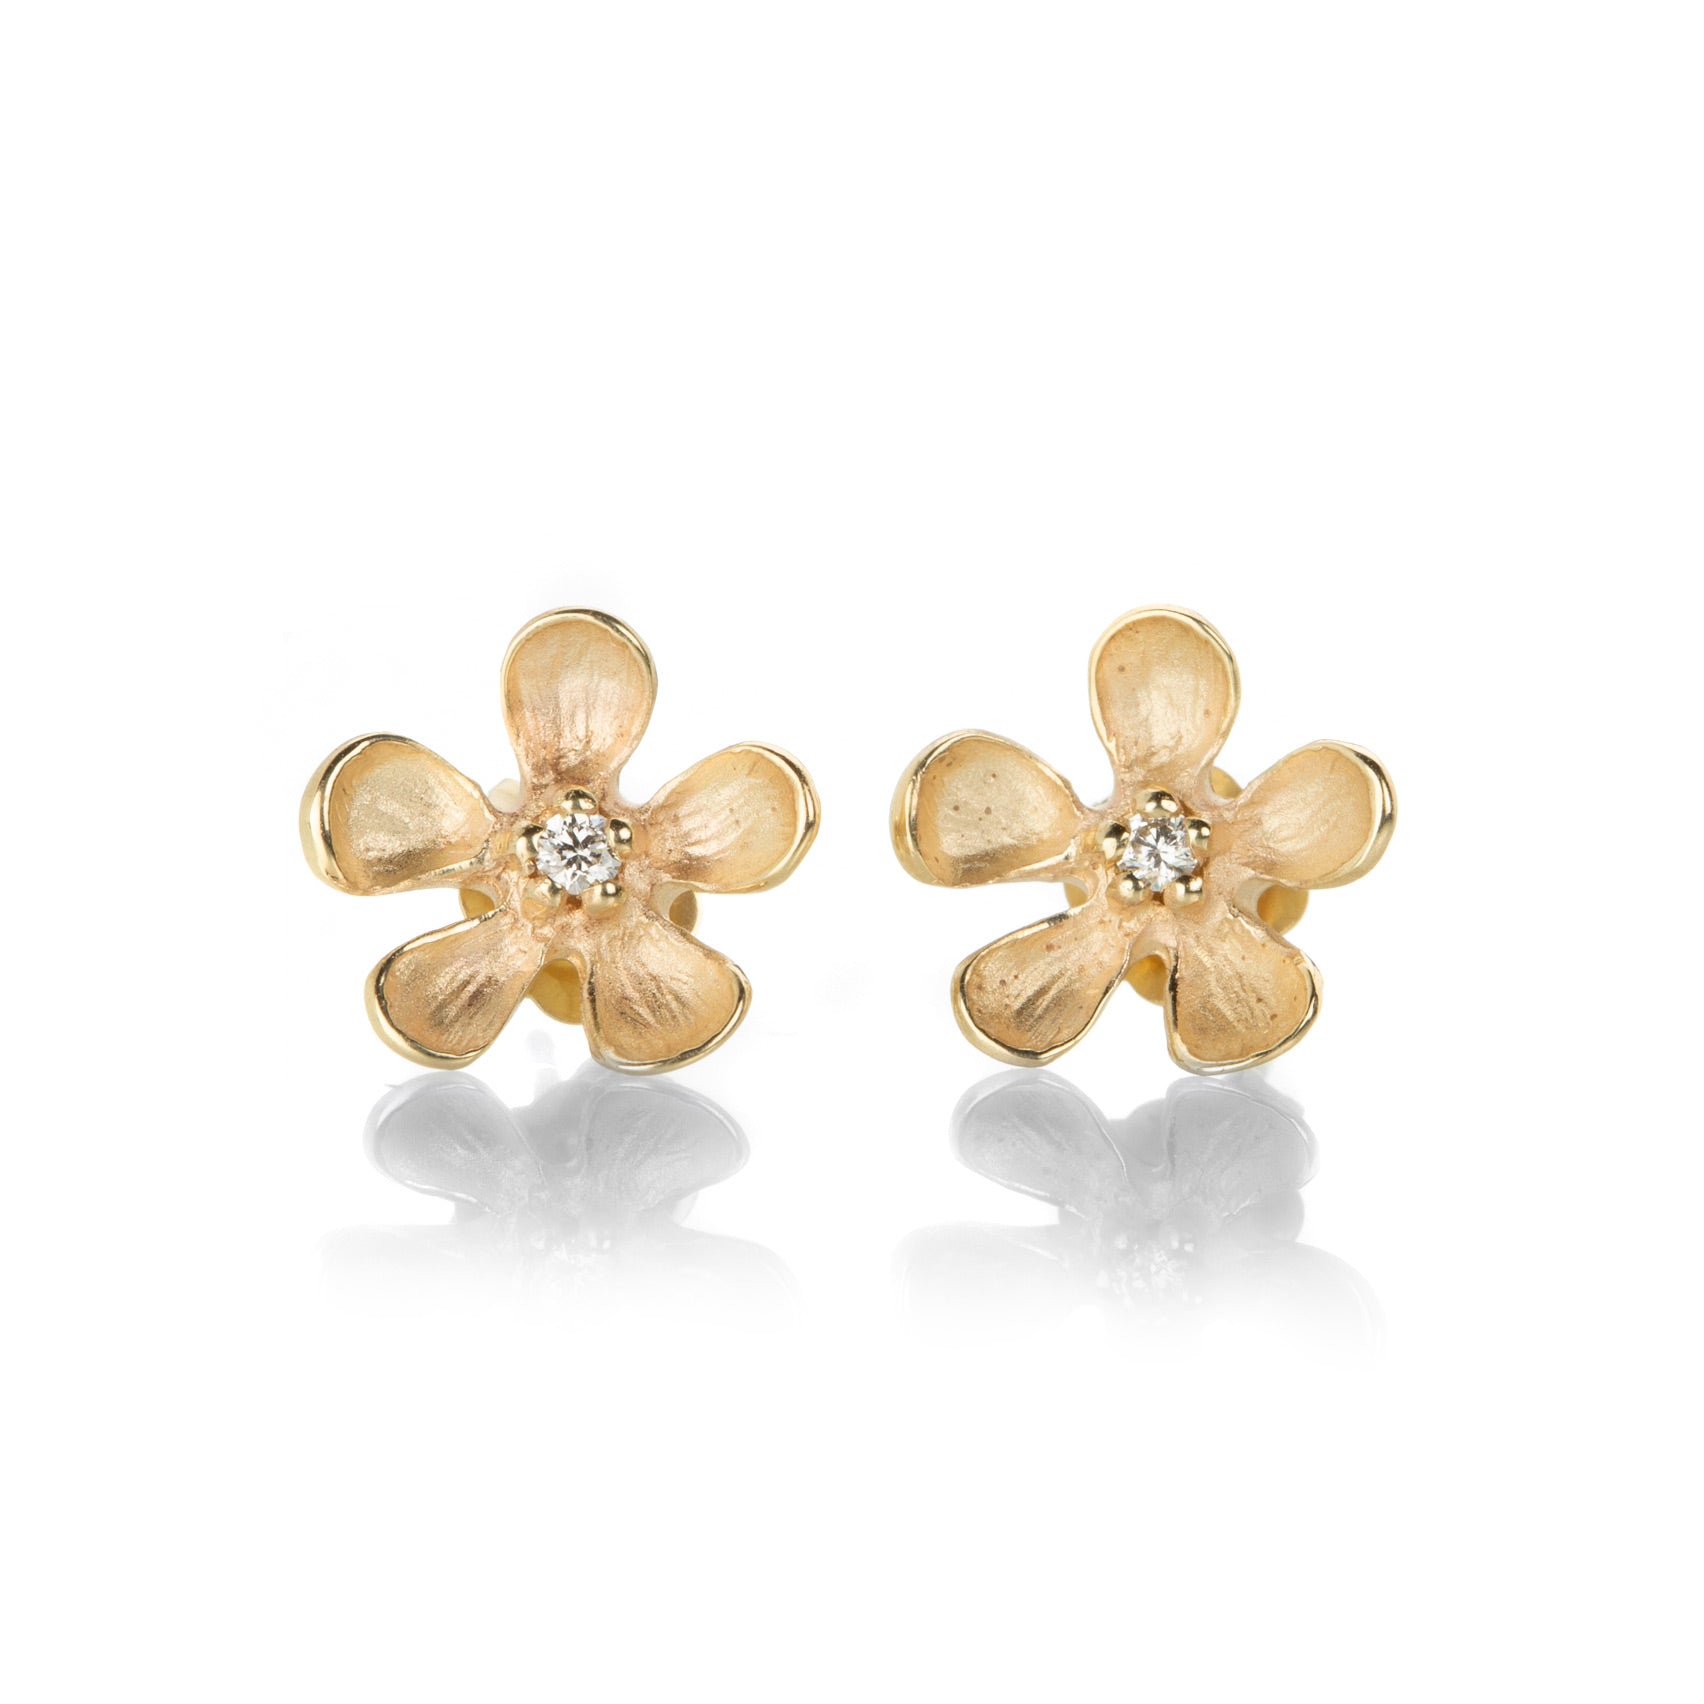 Magnificent Flower gold earrings by steelbijou - Stud earrings - Afrikrea